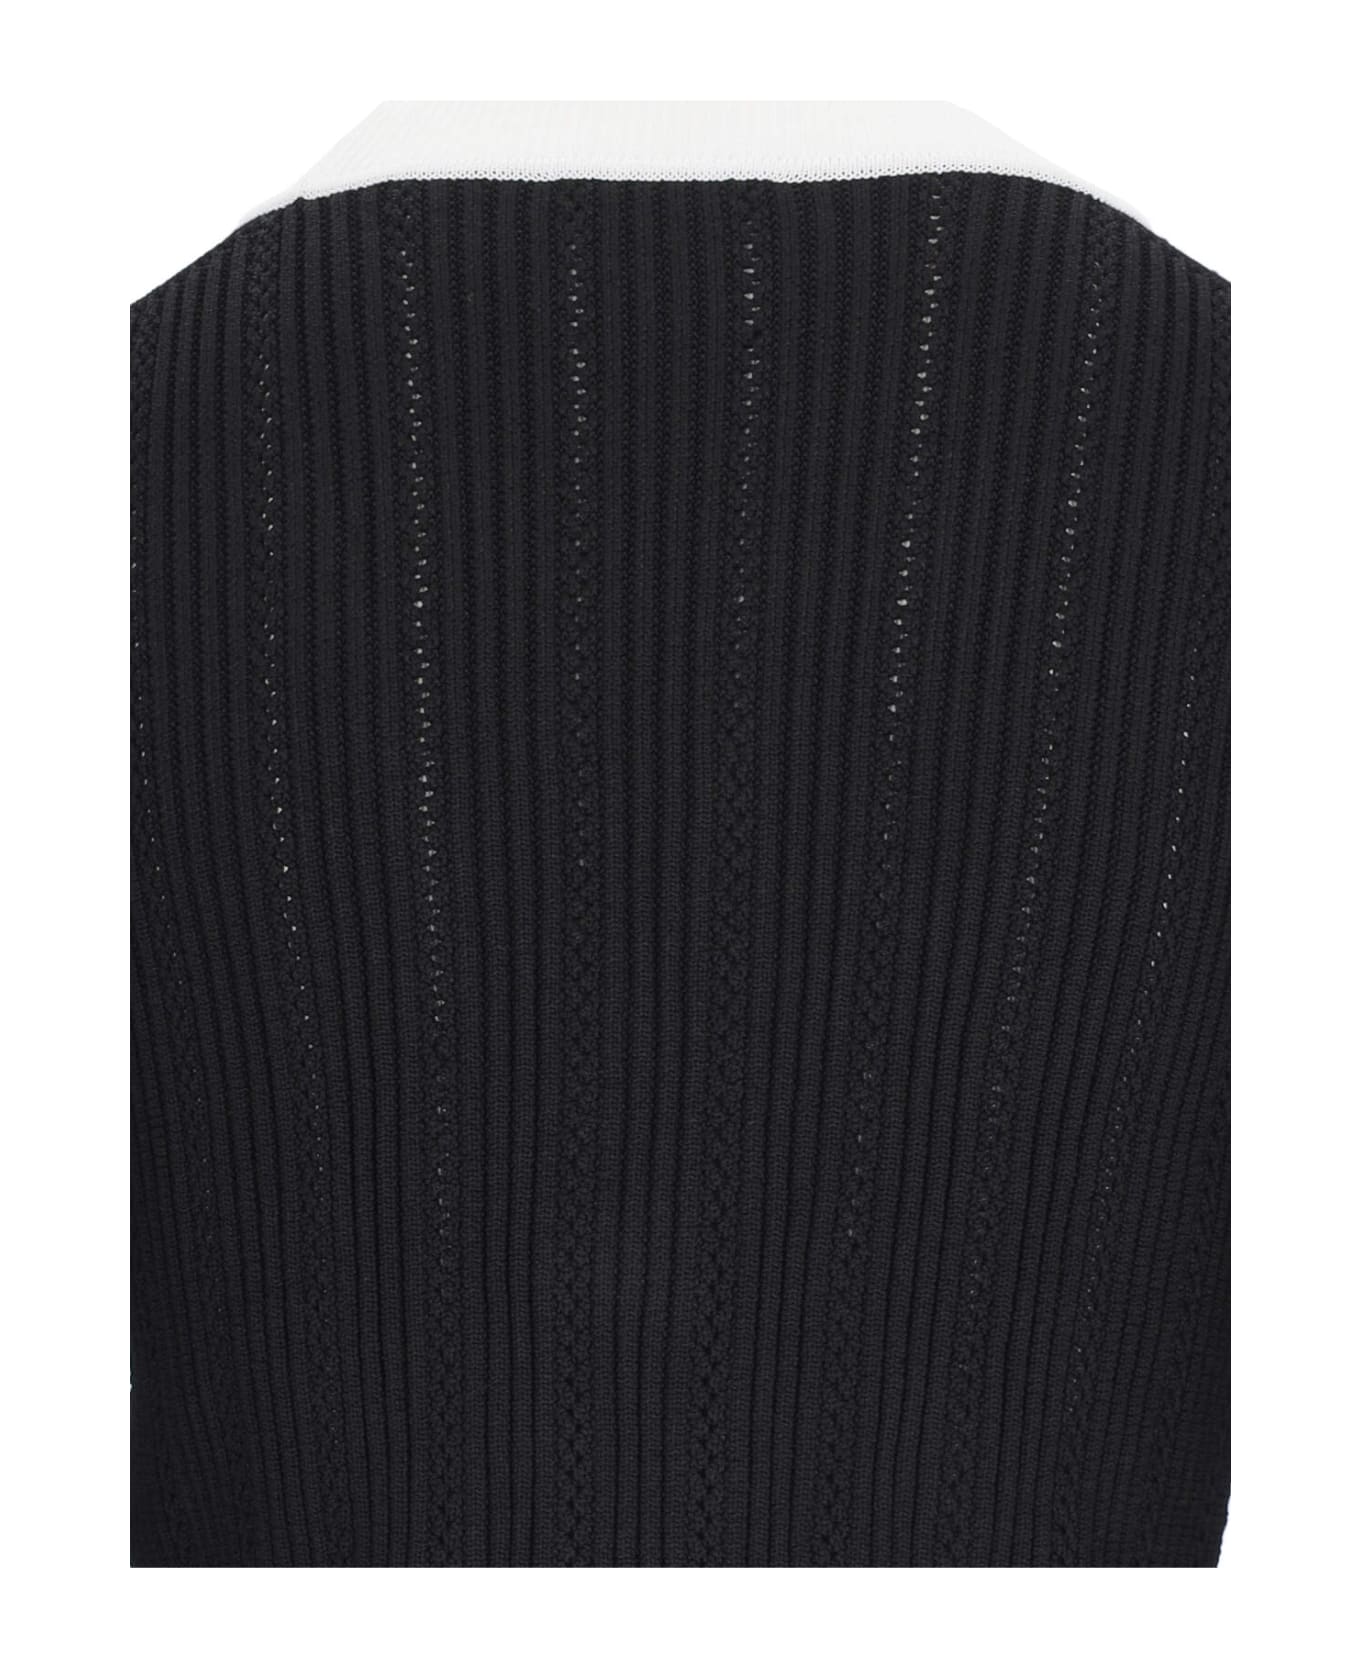 Balmain Knit Cropped Cardigan - Black  